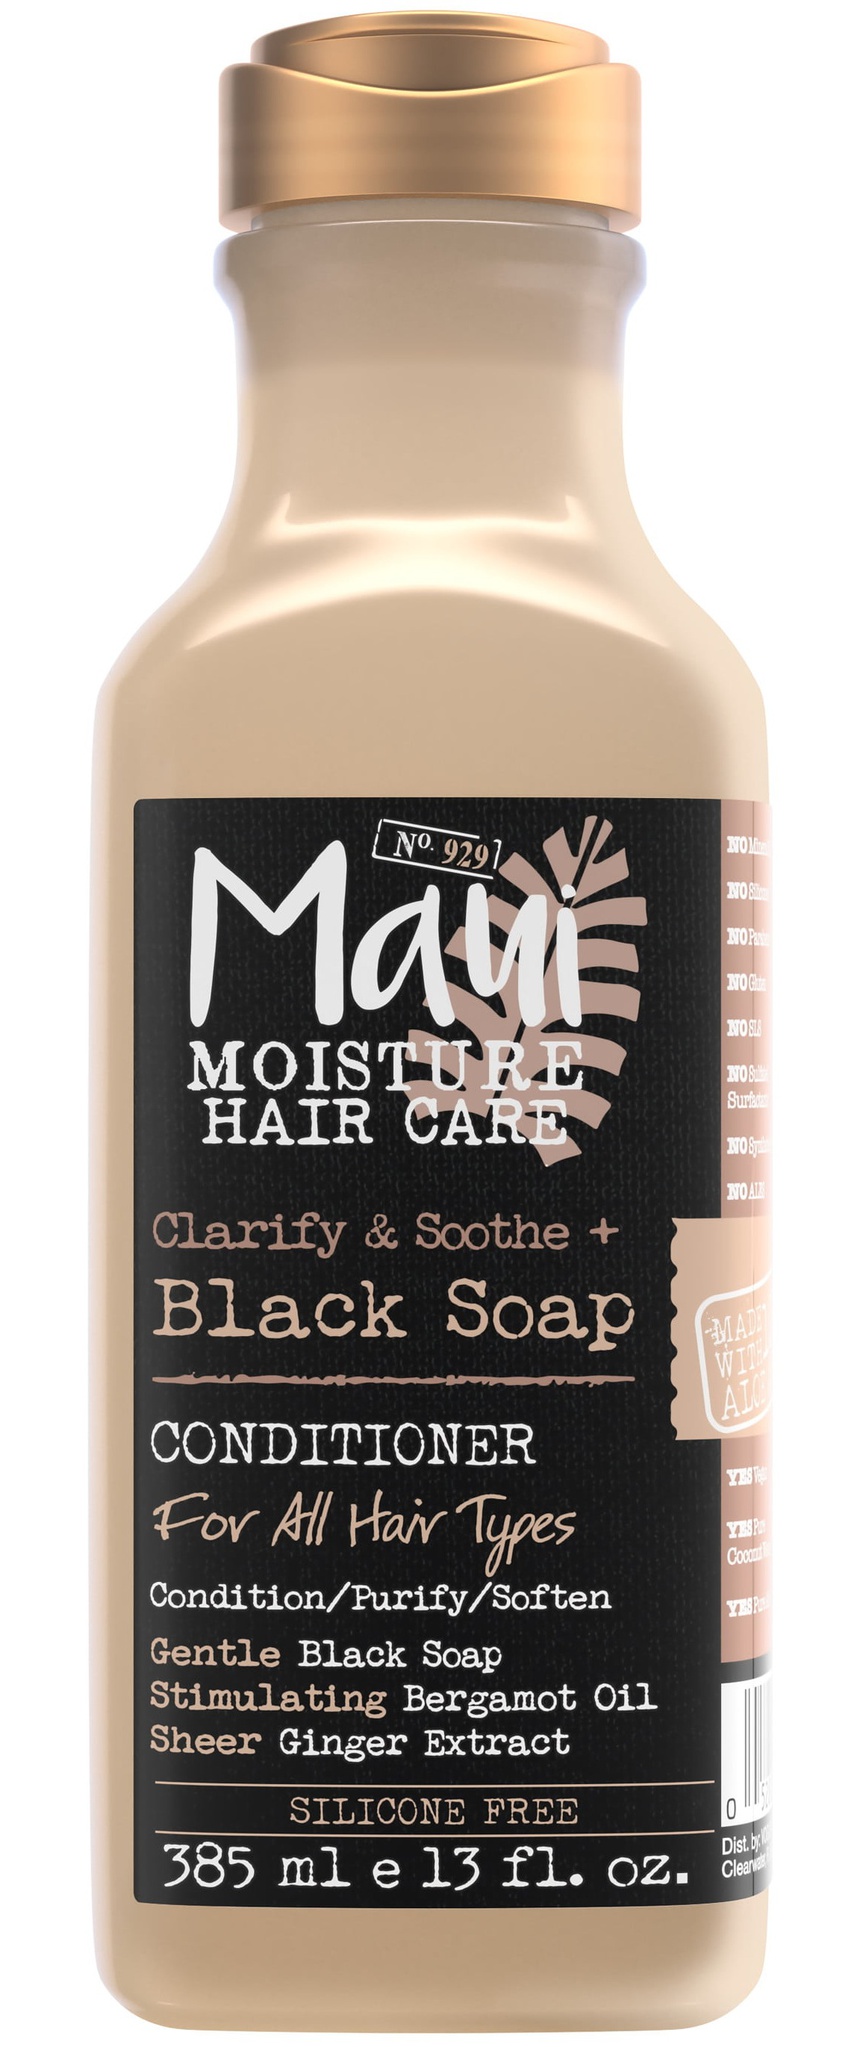 Maui moisture Clarify & Soothe + Black Soap Shampoo